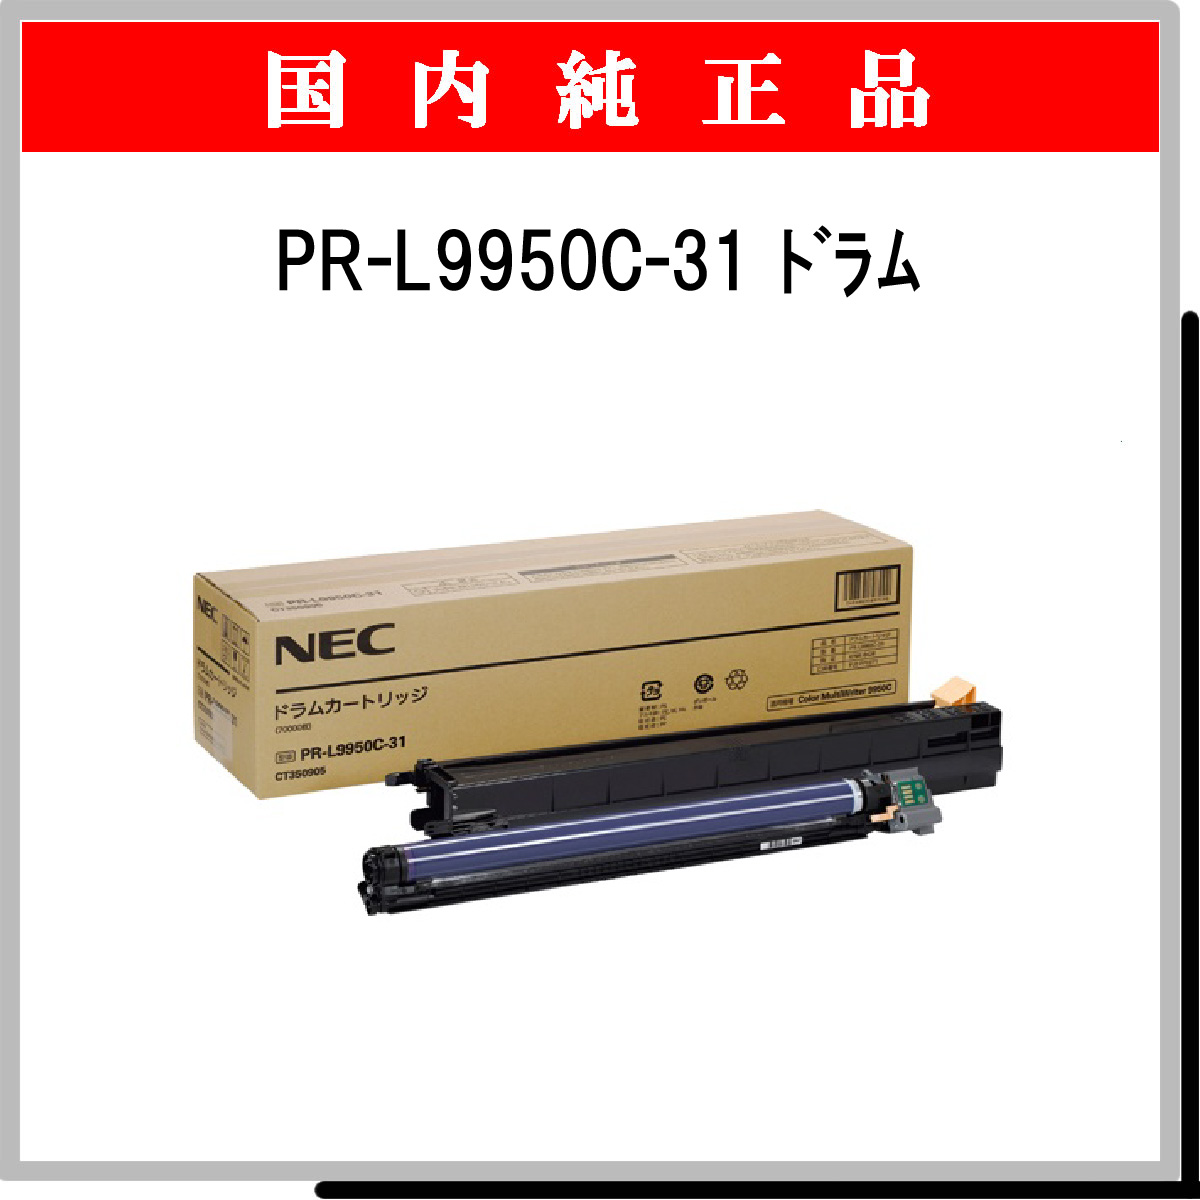 ◇高品質 NEC ドラムカートリッジ PR-L9950C-31 1個 ad-naturam.fr